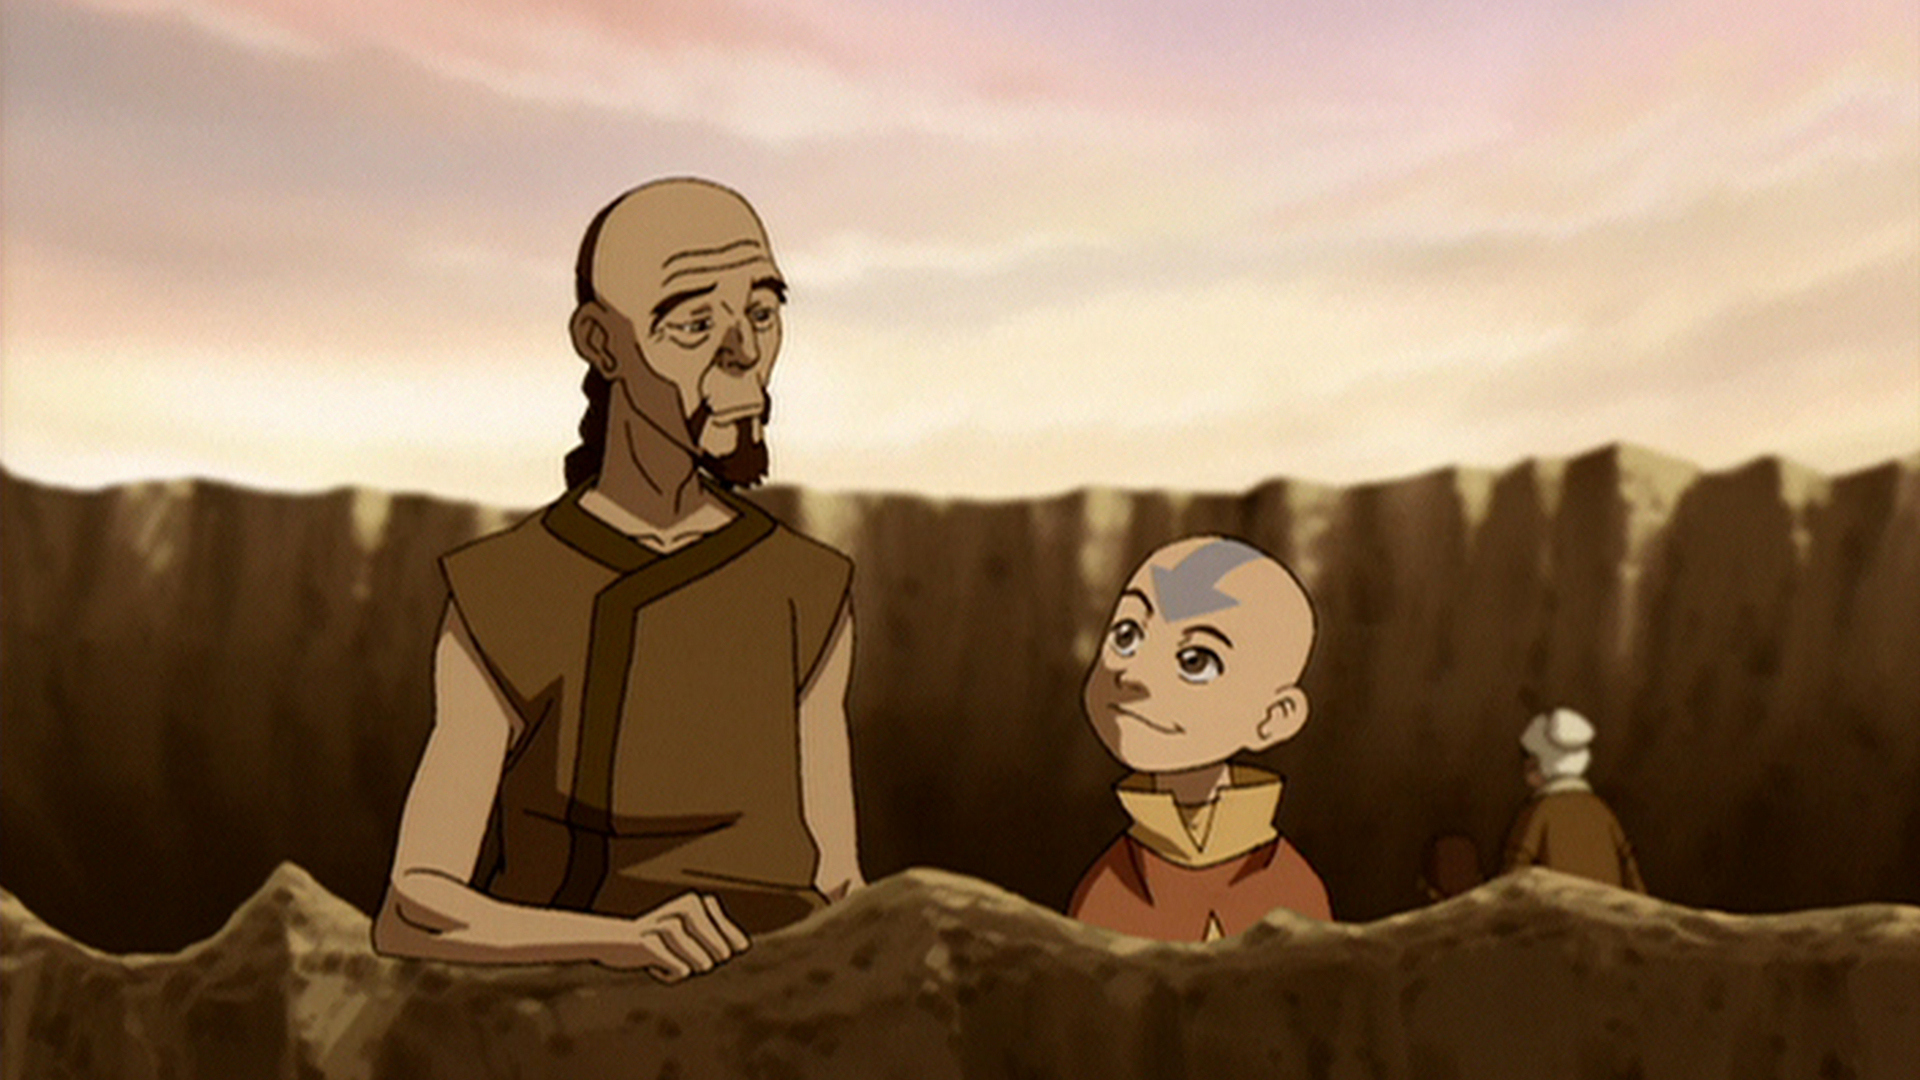 Ver Avatar La Leyenda De Aang Temporada 2 Episodio 14 Avatar La Leyenda De Aang Aventuras 0497